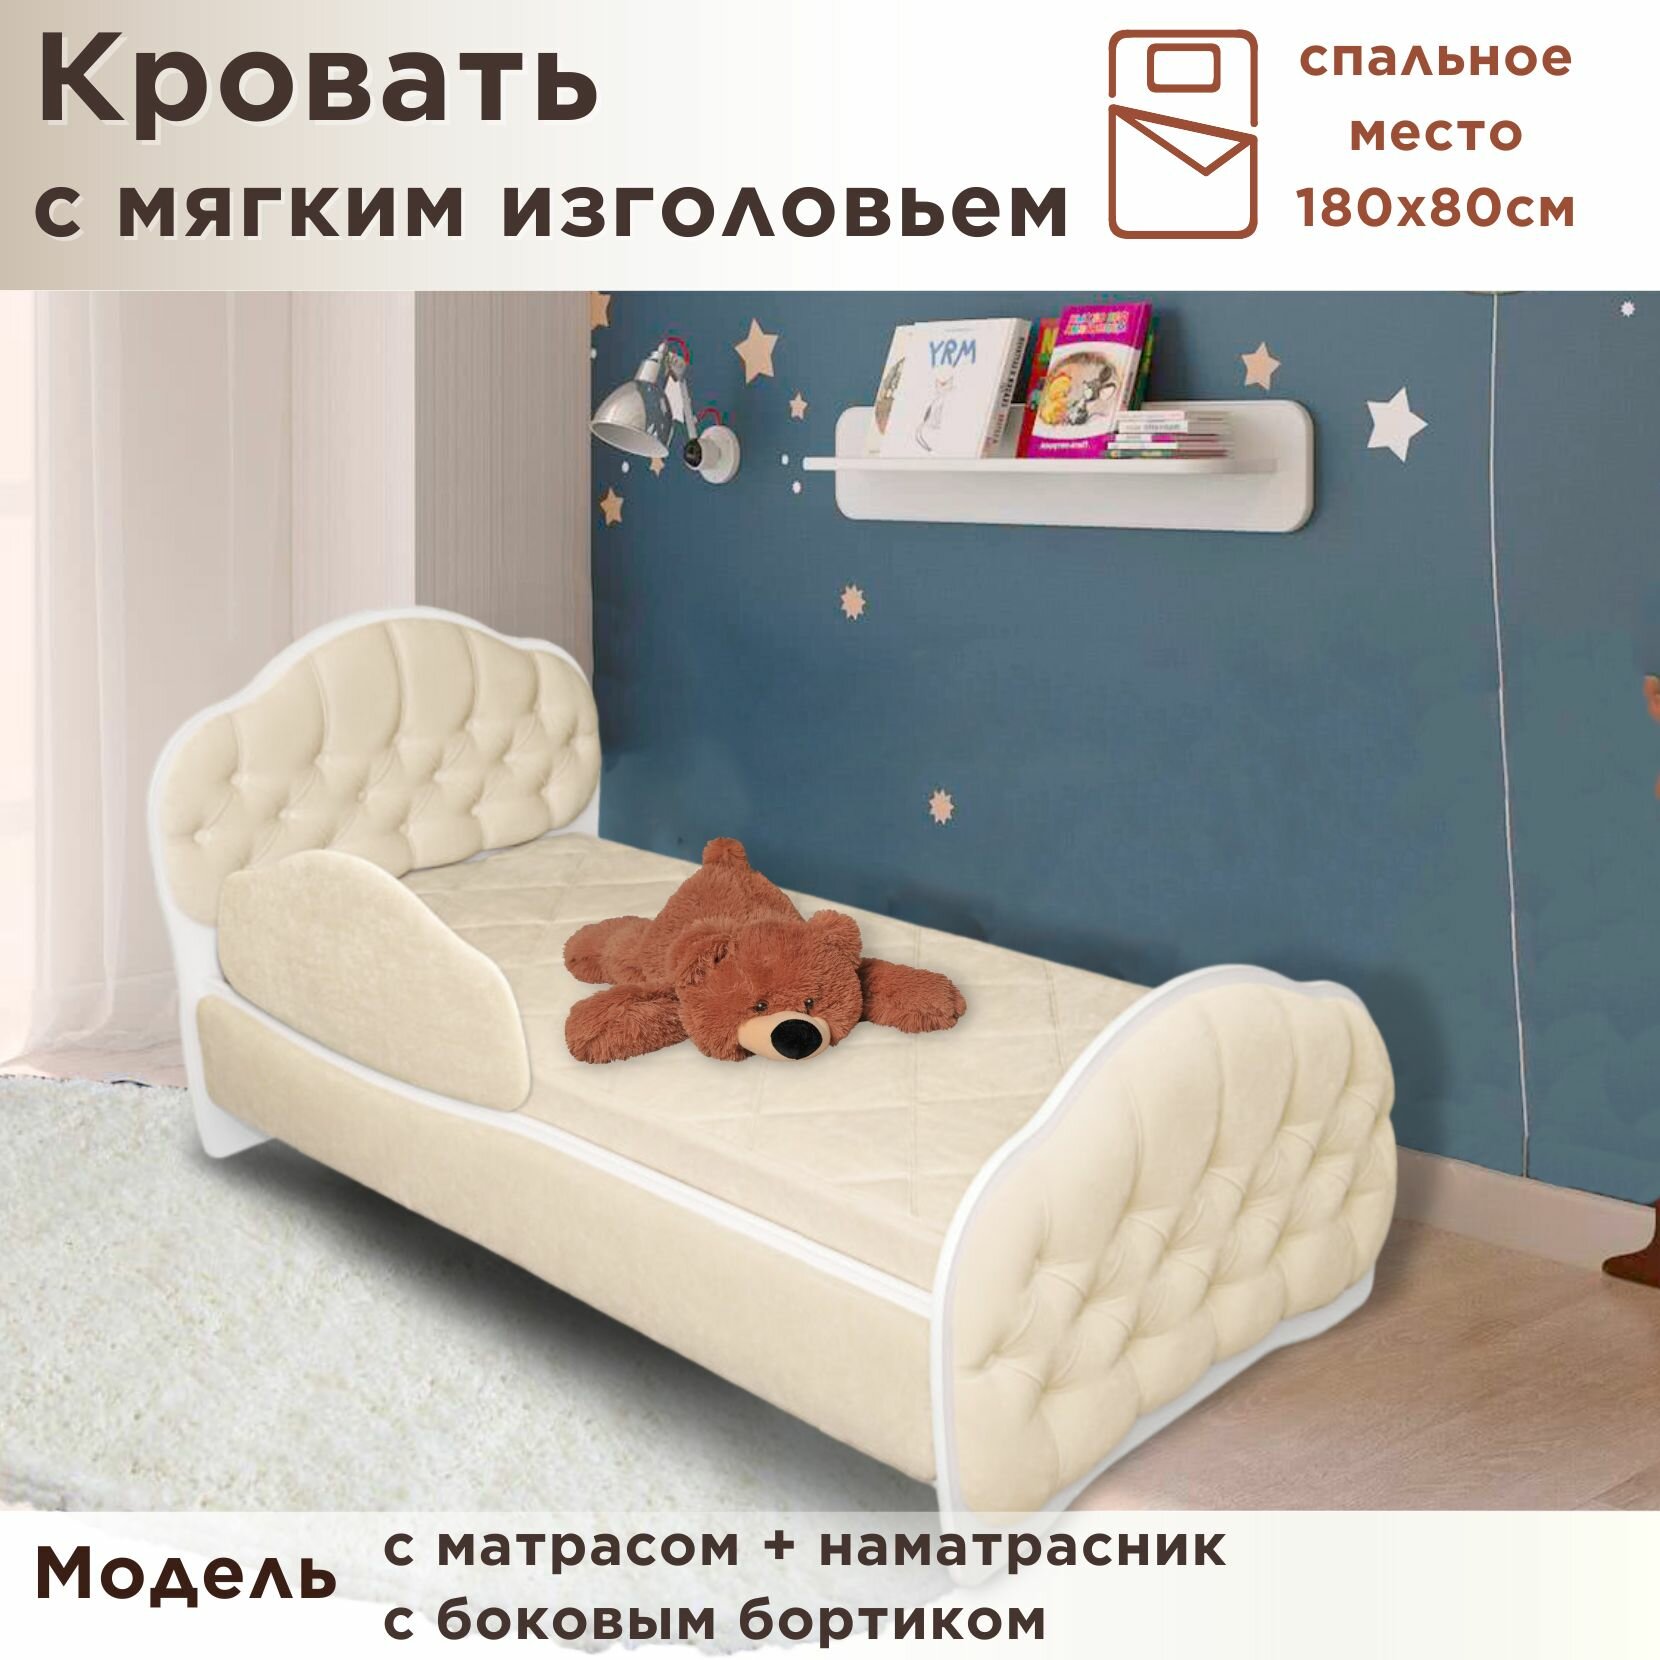 Кровать детская Гармония 180х80 см, Teddy 321, кровать + матрас + бортик + наматрасник